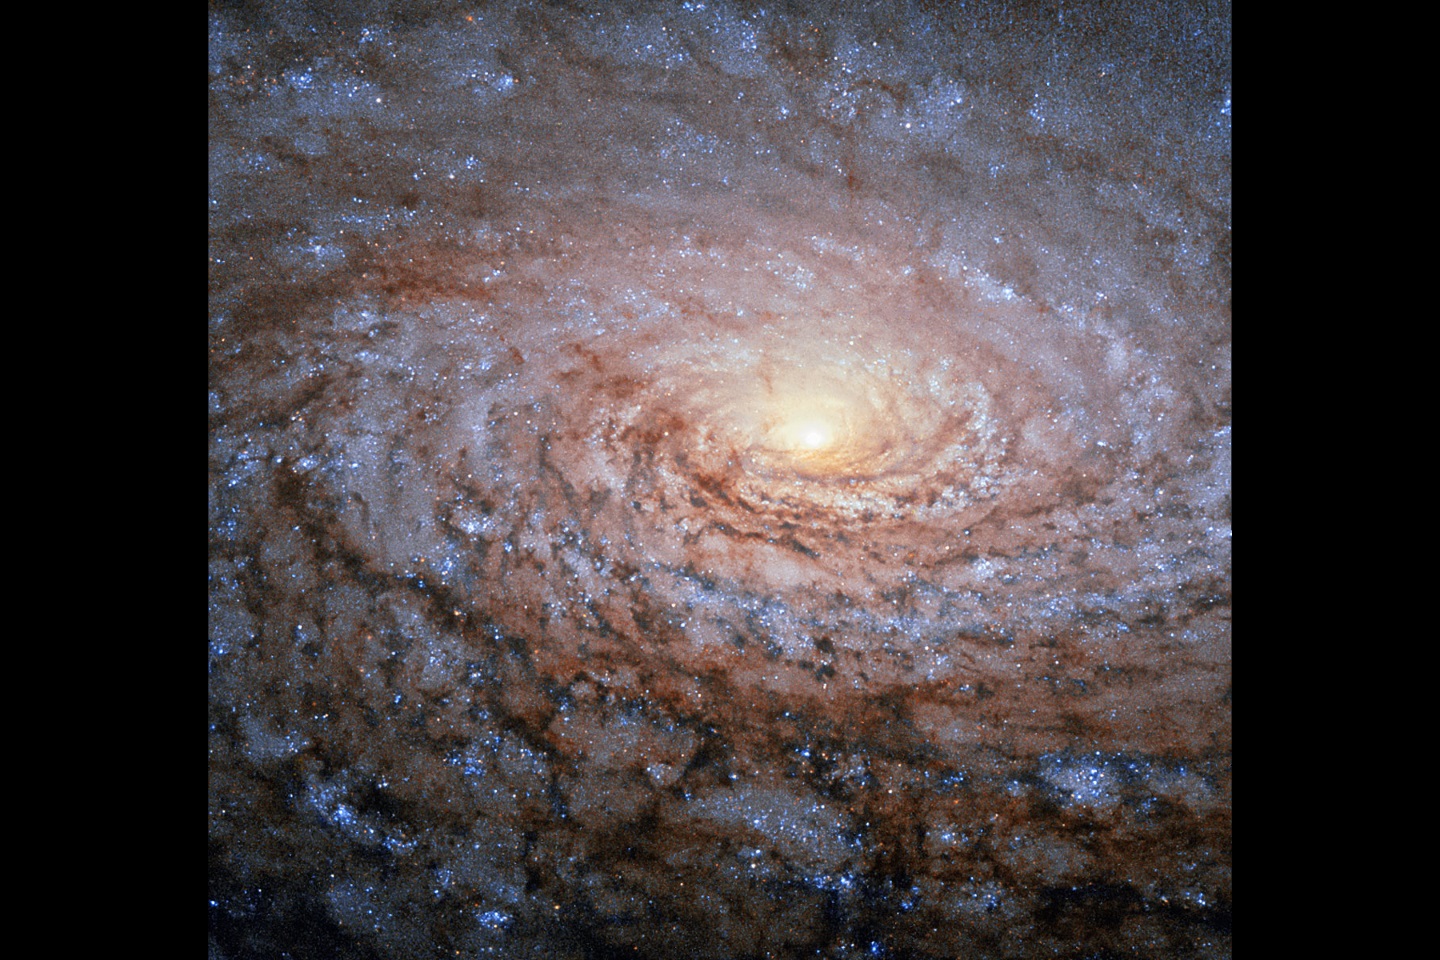 Расположение спиральных рукавов в галактике Мессье 63 (Галактика Подсолнух) в созвездии Гончие Псы, увиденное здесь на изображении космического телескопа НАСА «Хаббл», напоминает узор в центре подсолнечника.